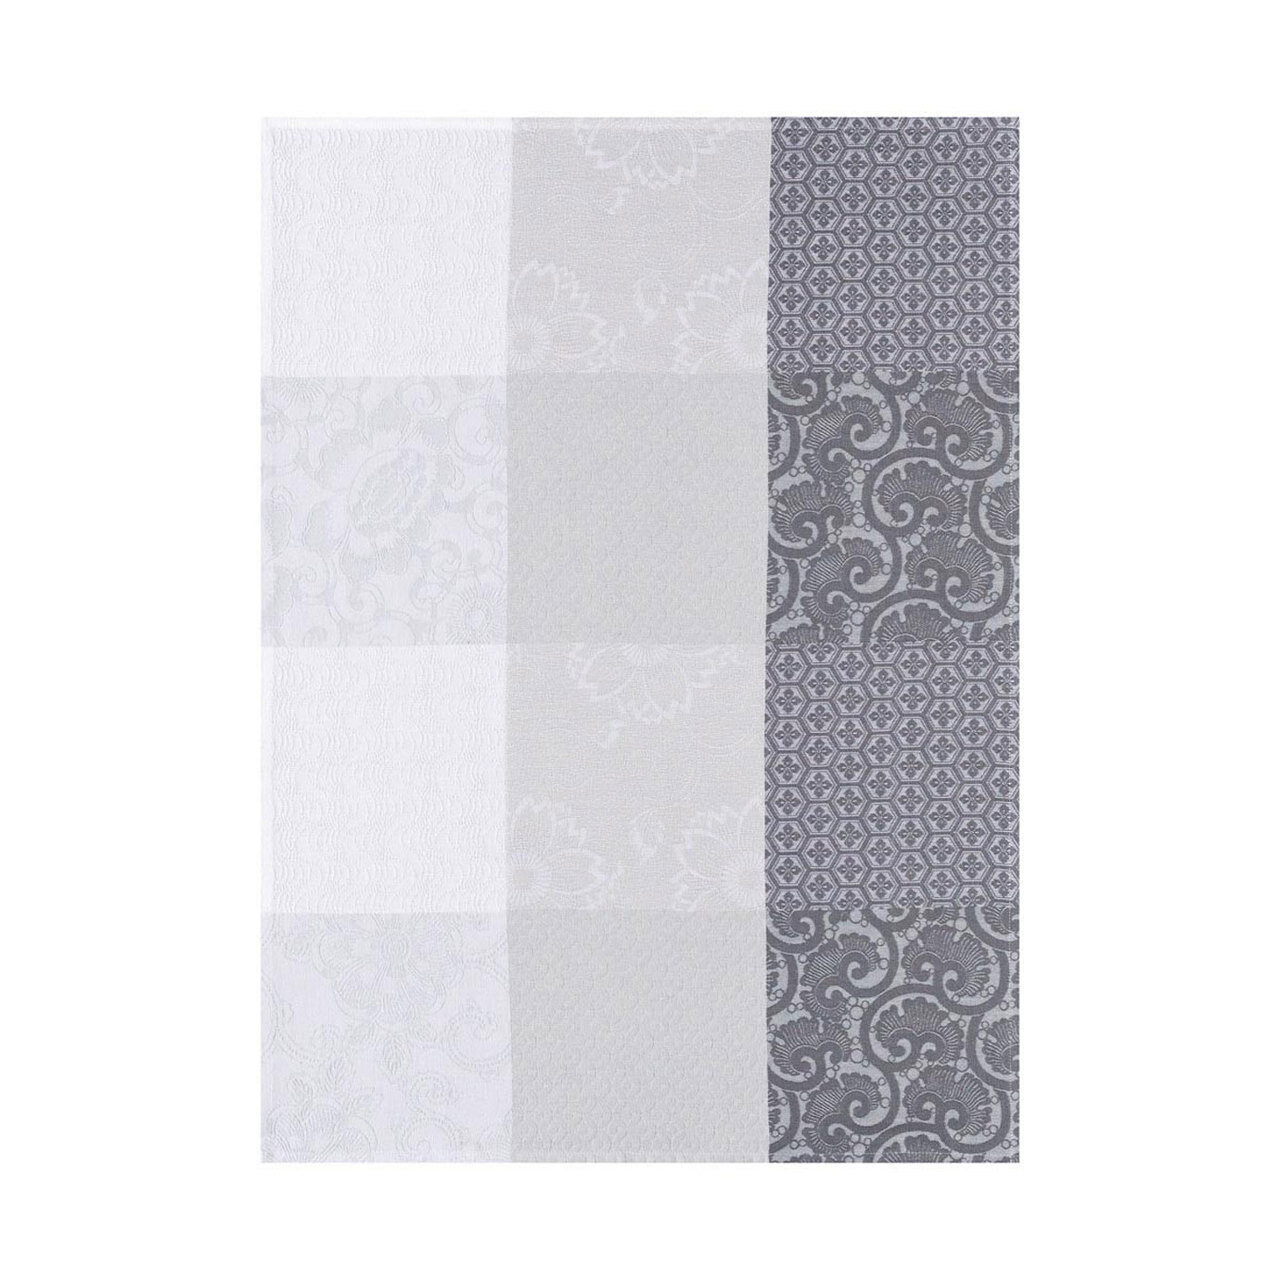 Le Jacquard Francais Tea Towel Fleurs De Kyoto Mist 24 x 31 Pure Cotton Set of 4